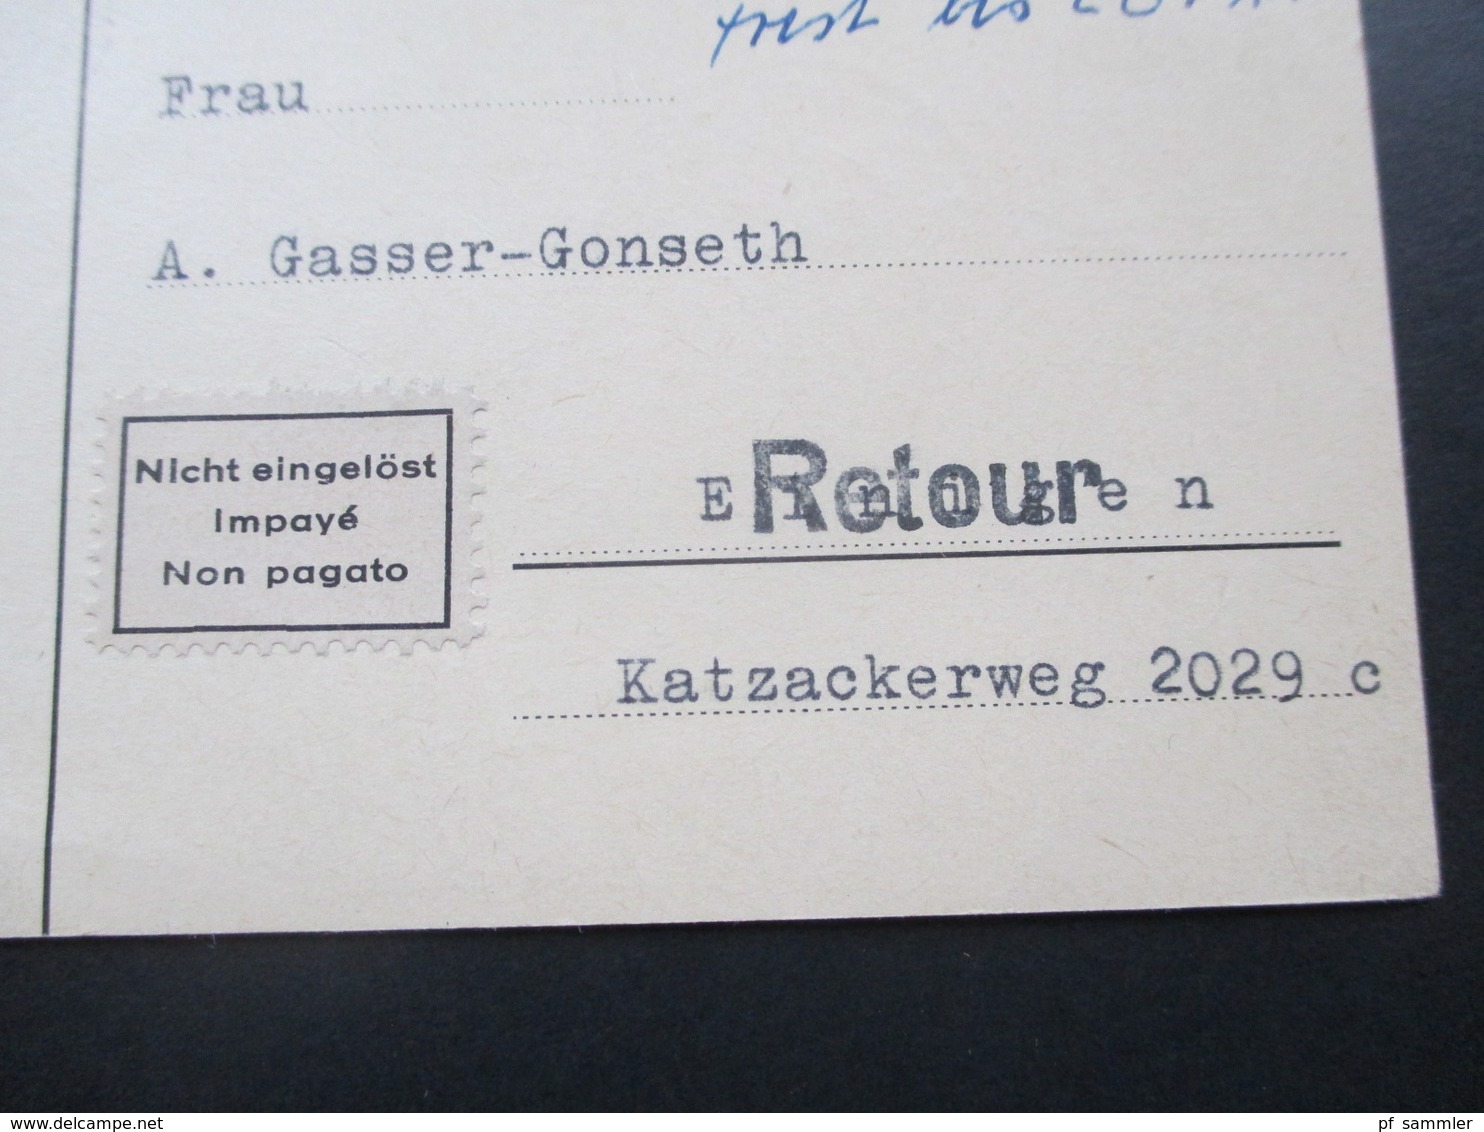 Schweiz 1958 2x Nr. 646 EF auf Nachnahmekarten Retour / Nicht eingelöst / impaye / Non pagato